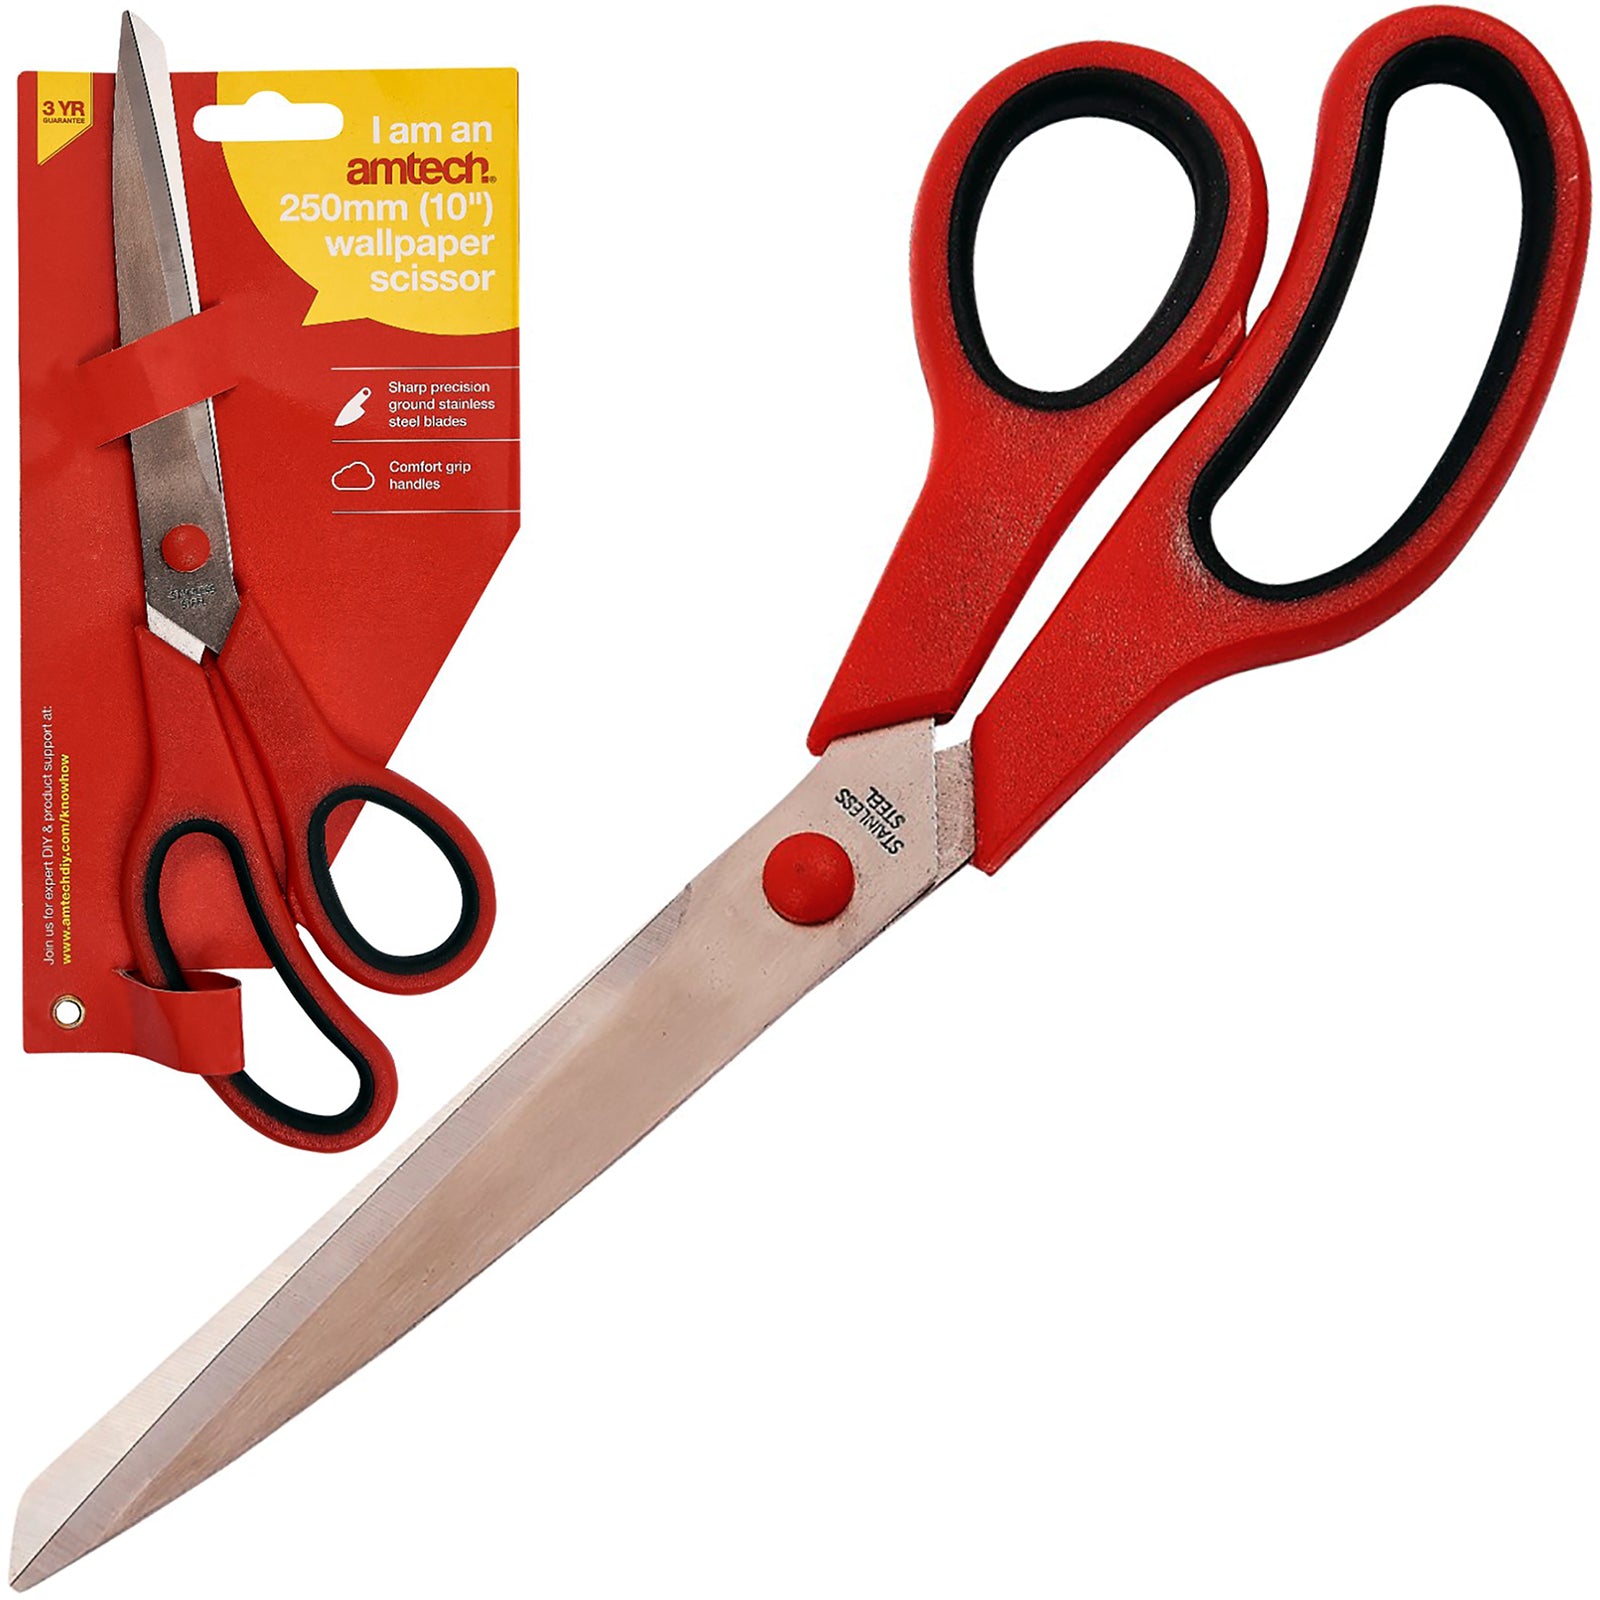 Amtech 10" 250mm Professional Wallpaper Scissors